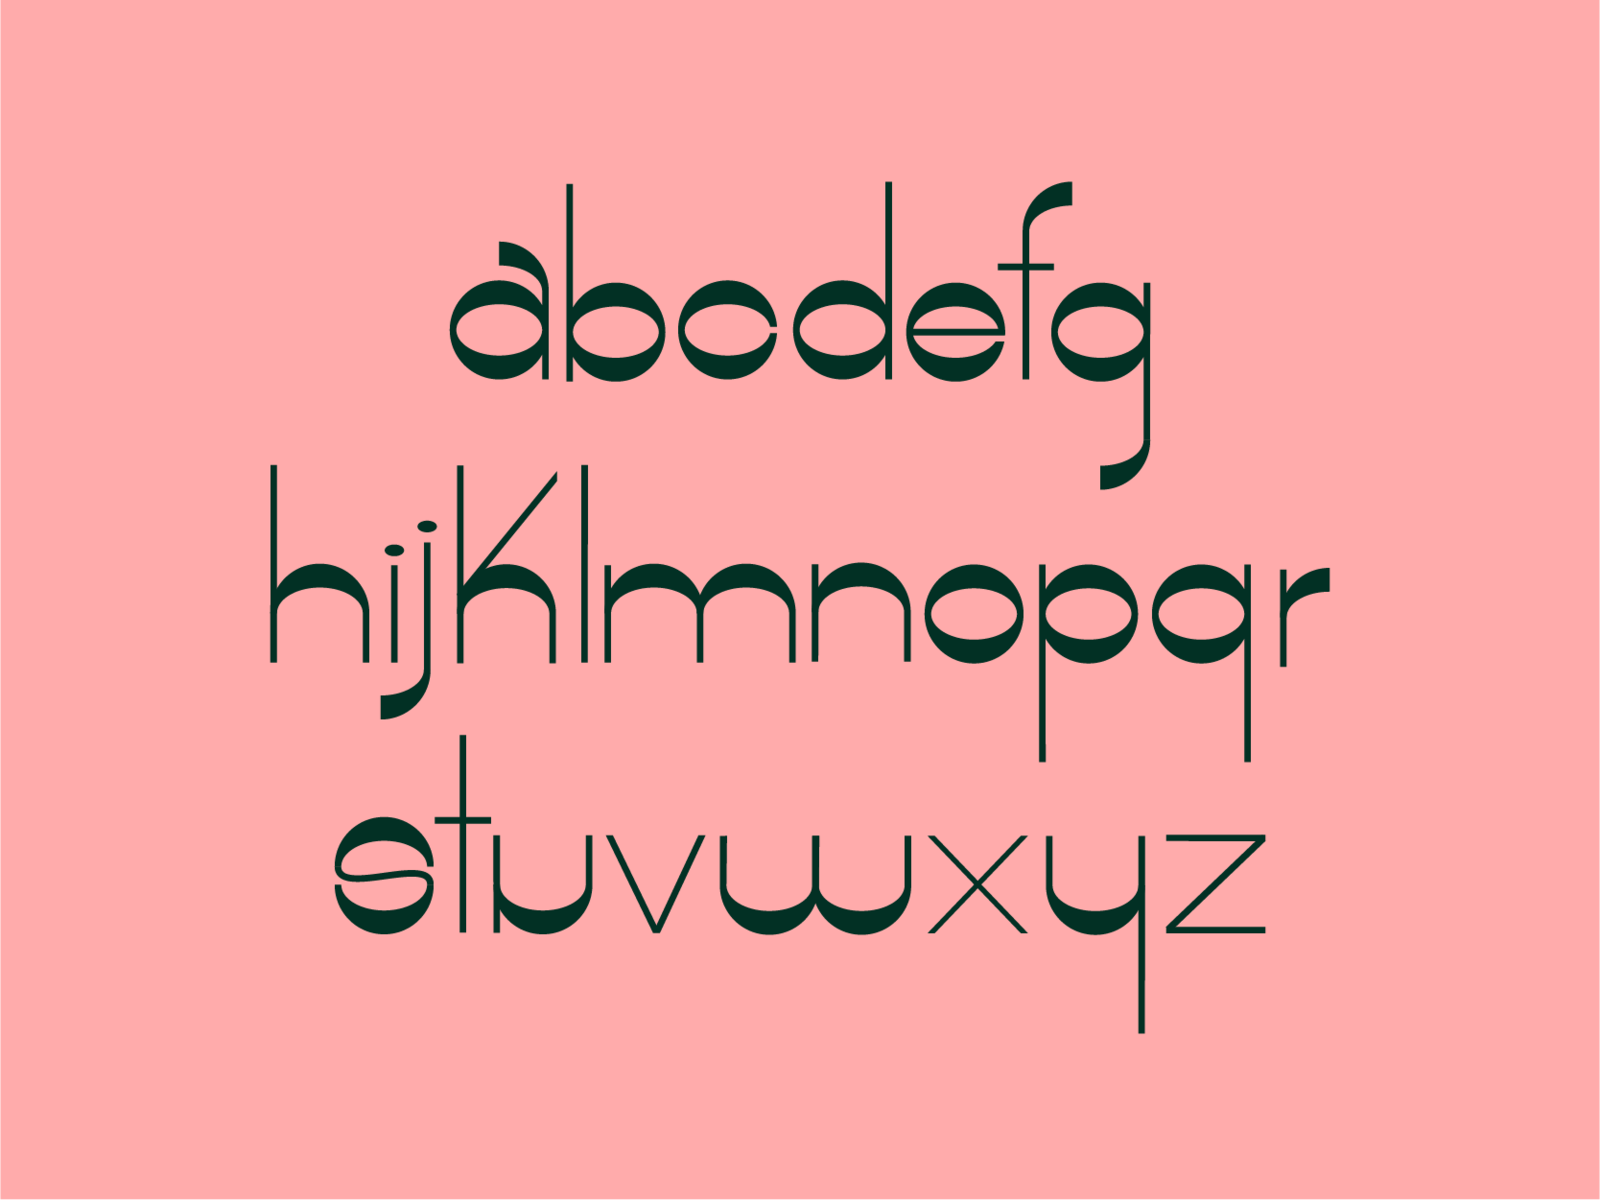 Retro Typeface by Josh VandenAvond on Dribbble